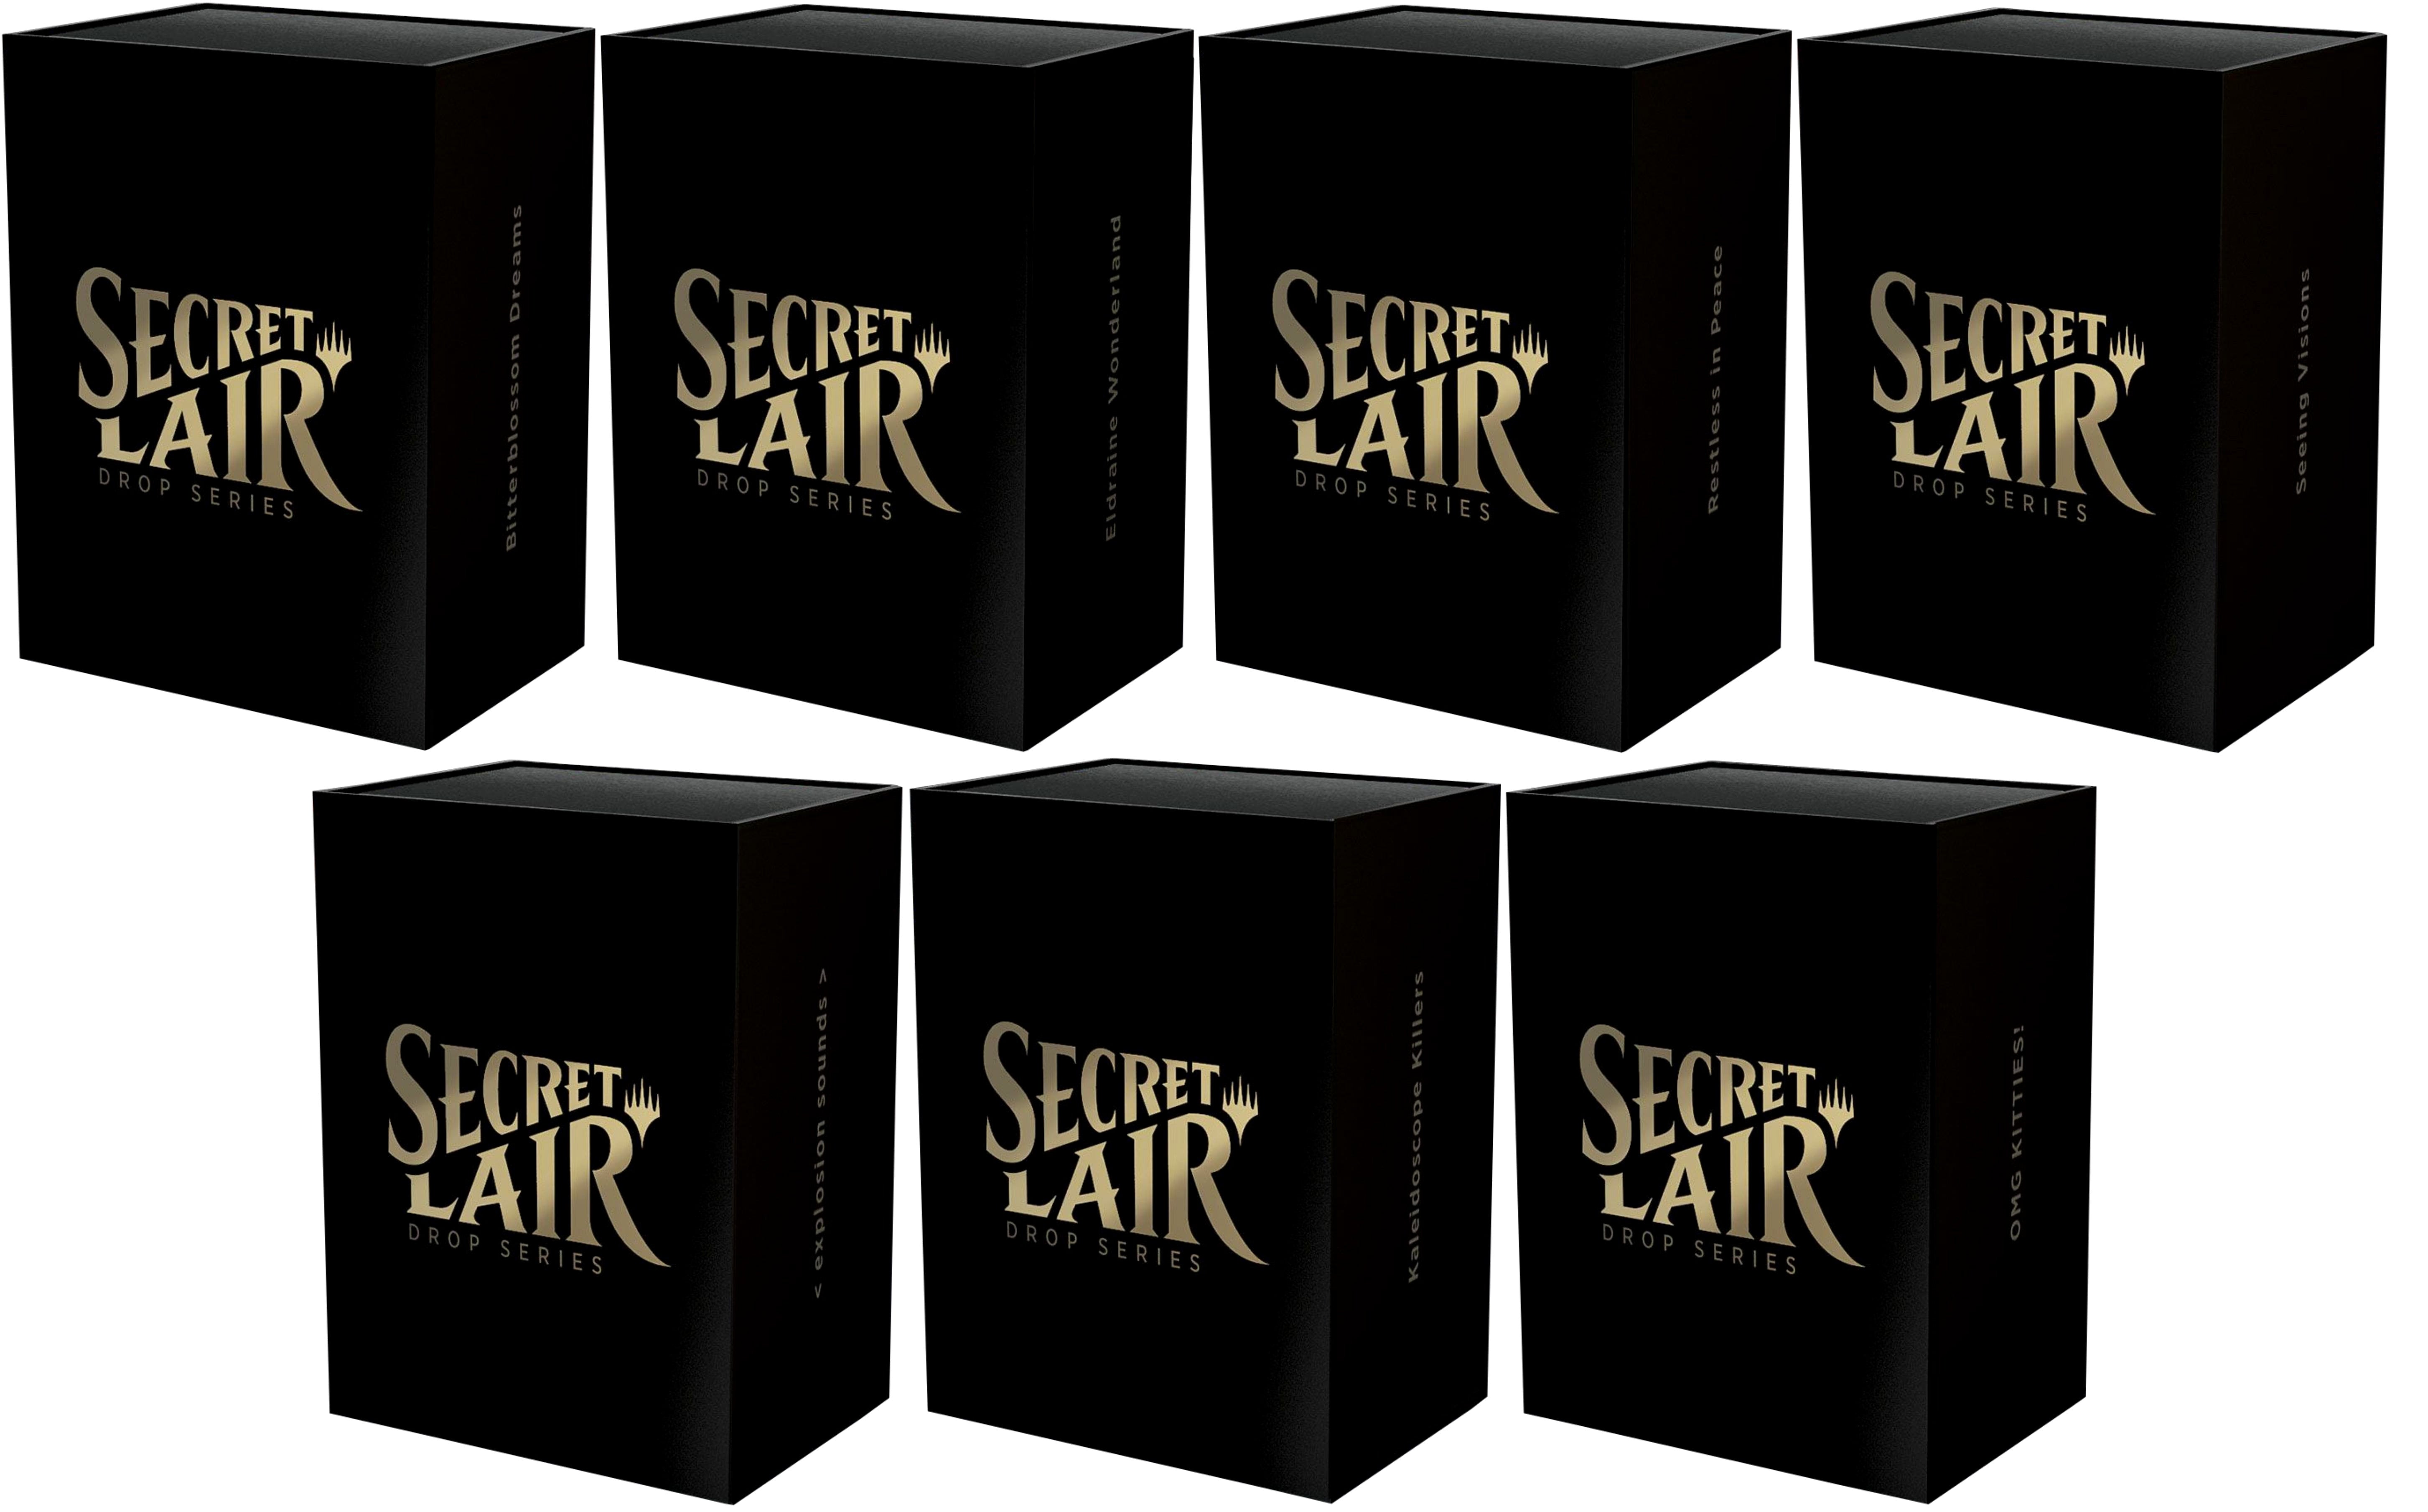 Secret Lair: Drop Series - Secret Lair Bundle